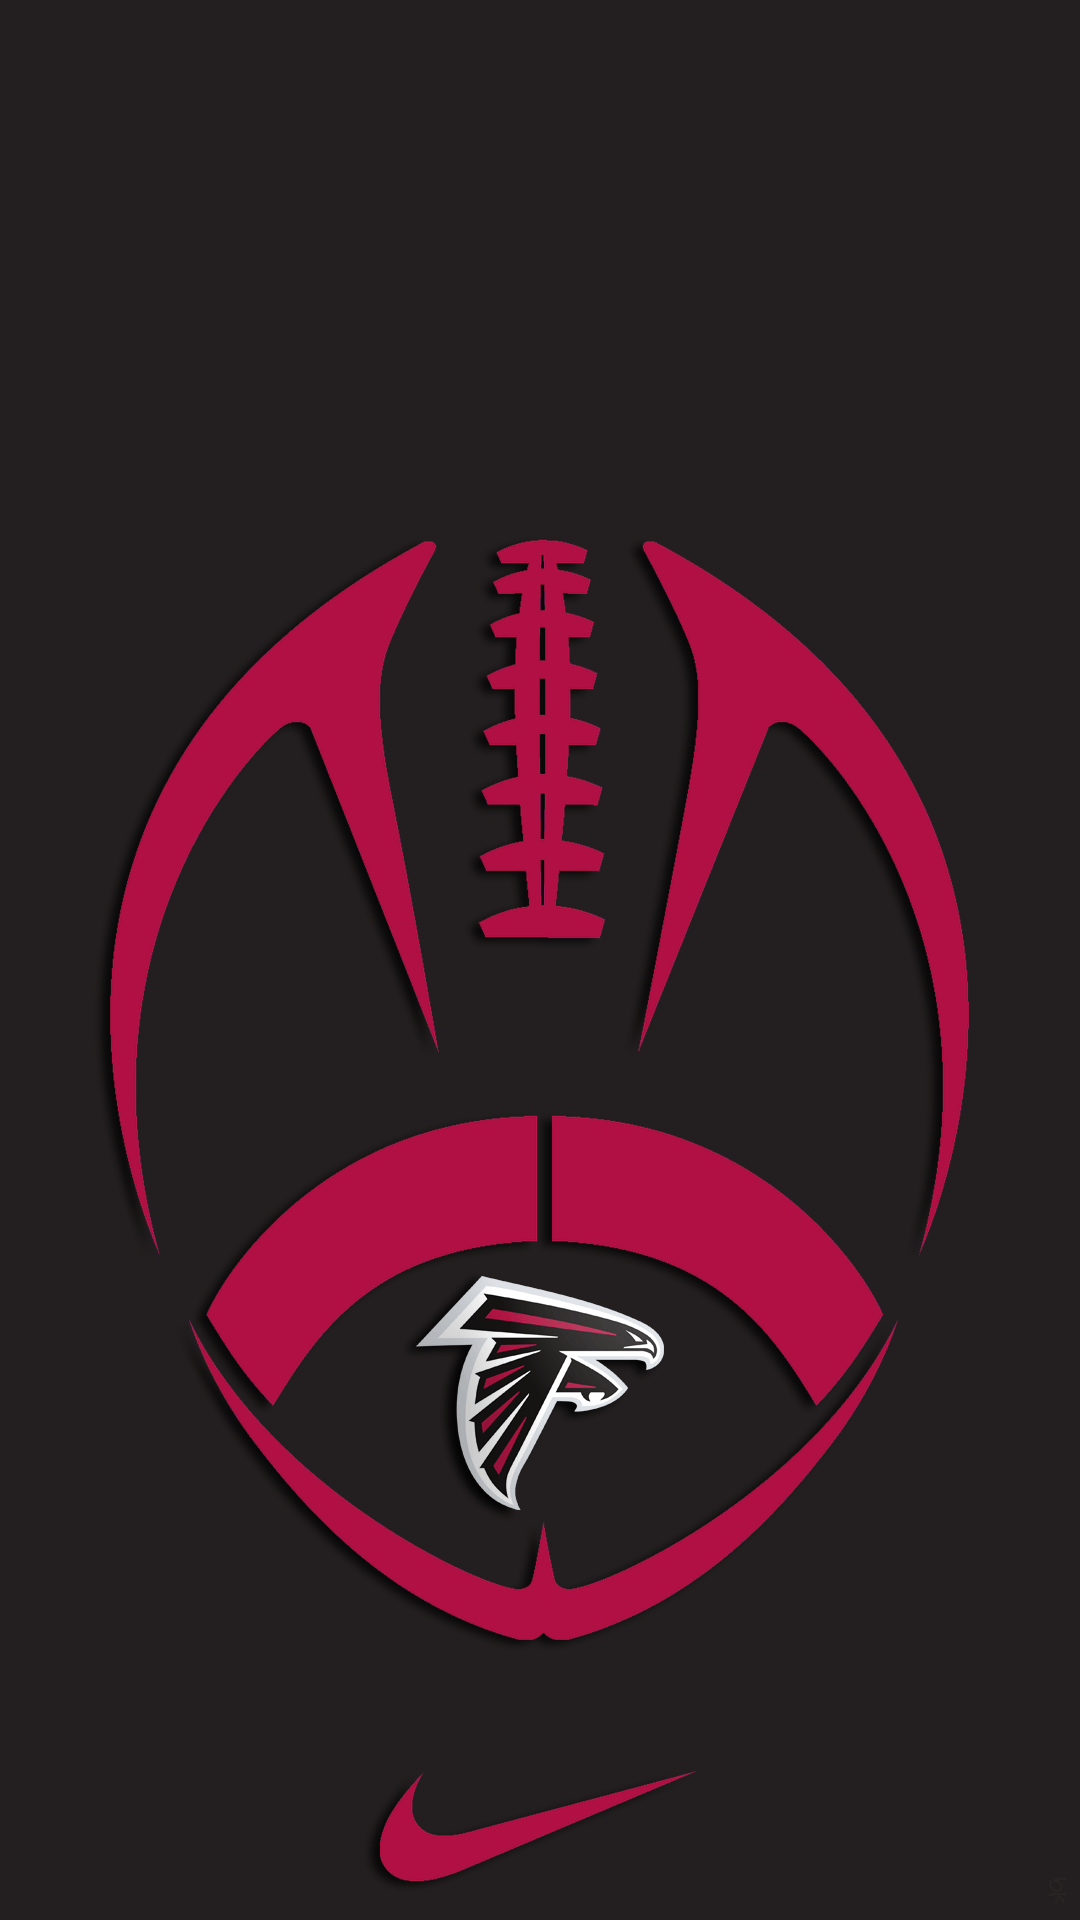 Atlanta Falcons HD Wallpaper for Android